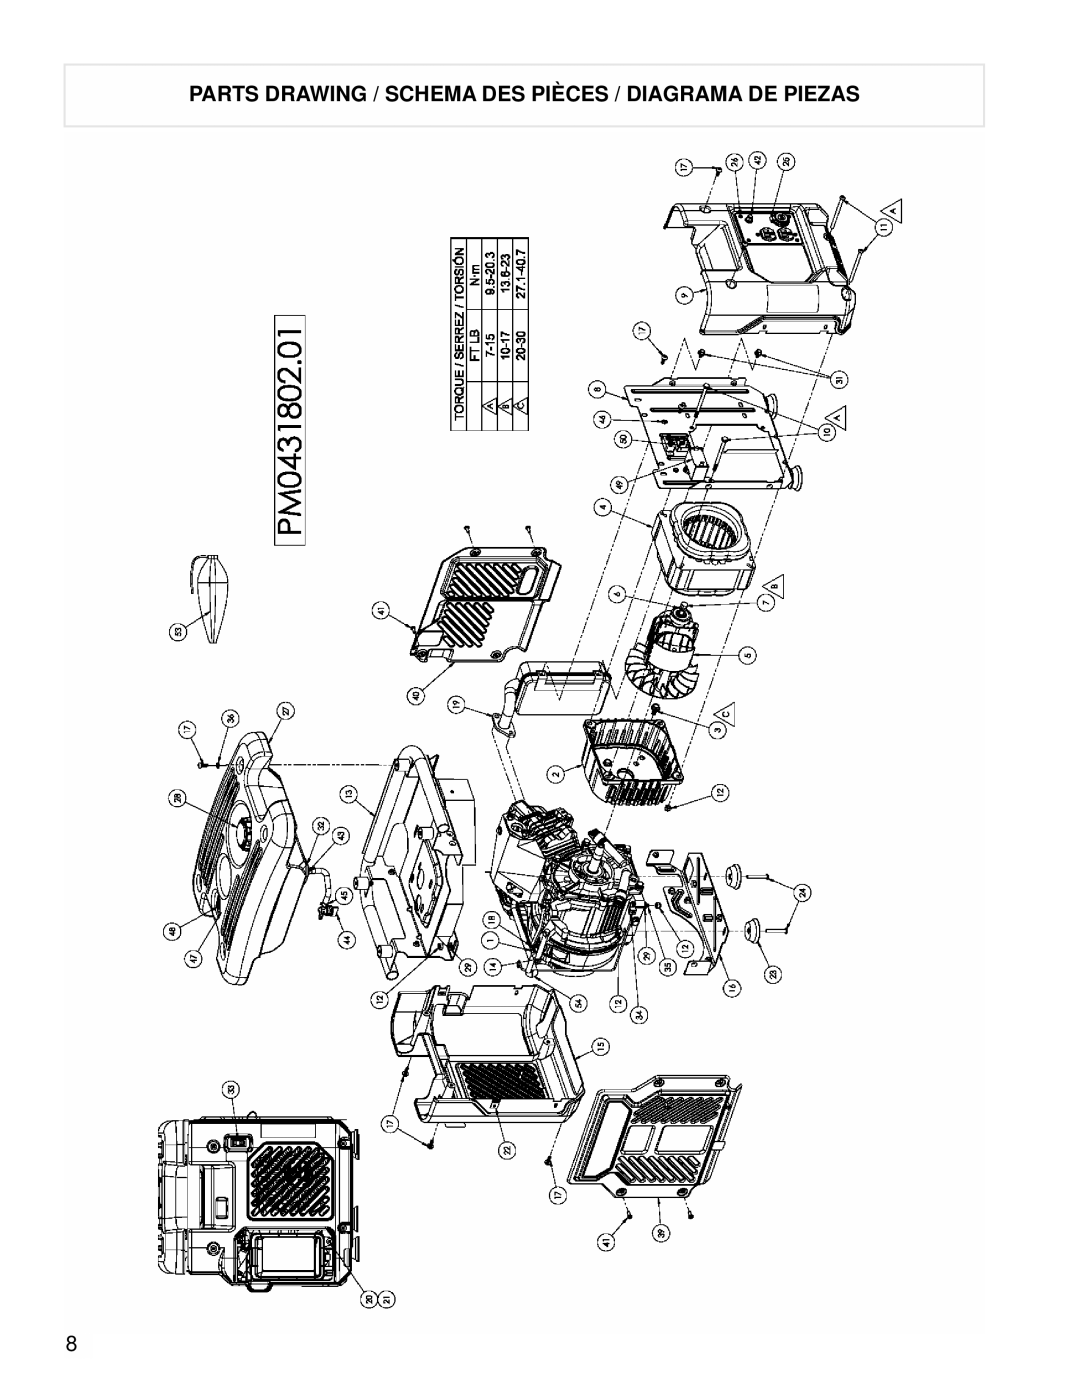 Coleman Powermate Generator, PM0431802.01 manual Parts Drawing / Schema Des Pièces / Diagrama De Piezas 